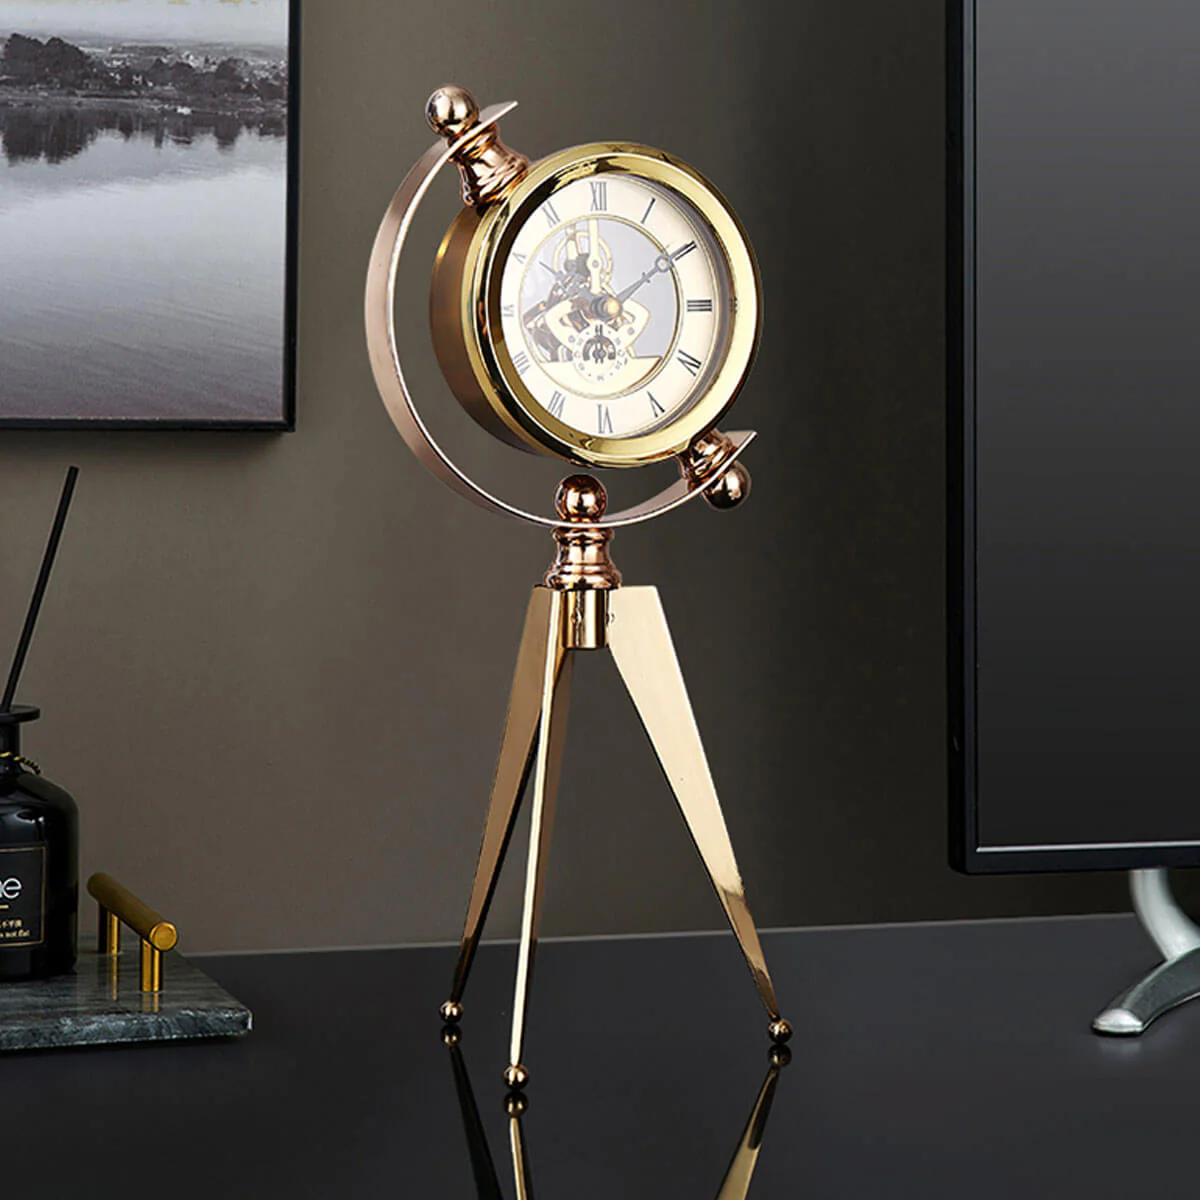 Antique Elegance: Exploring the Charm of Antique Clock Designs